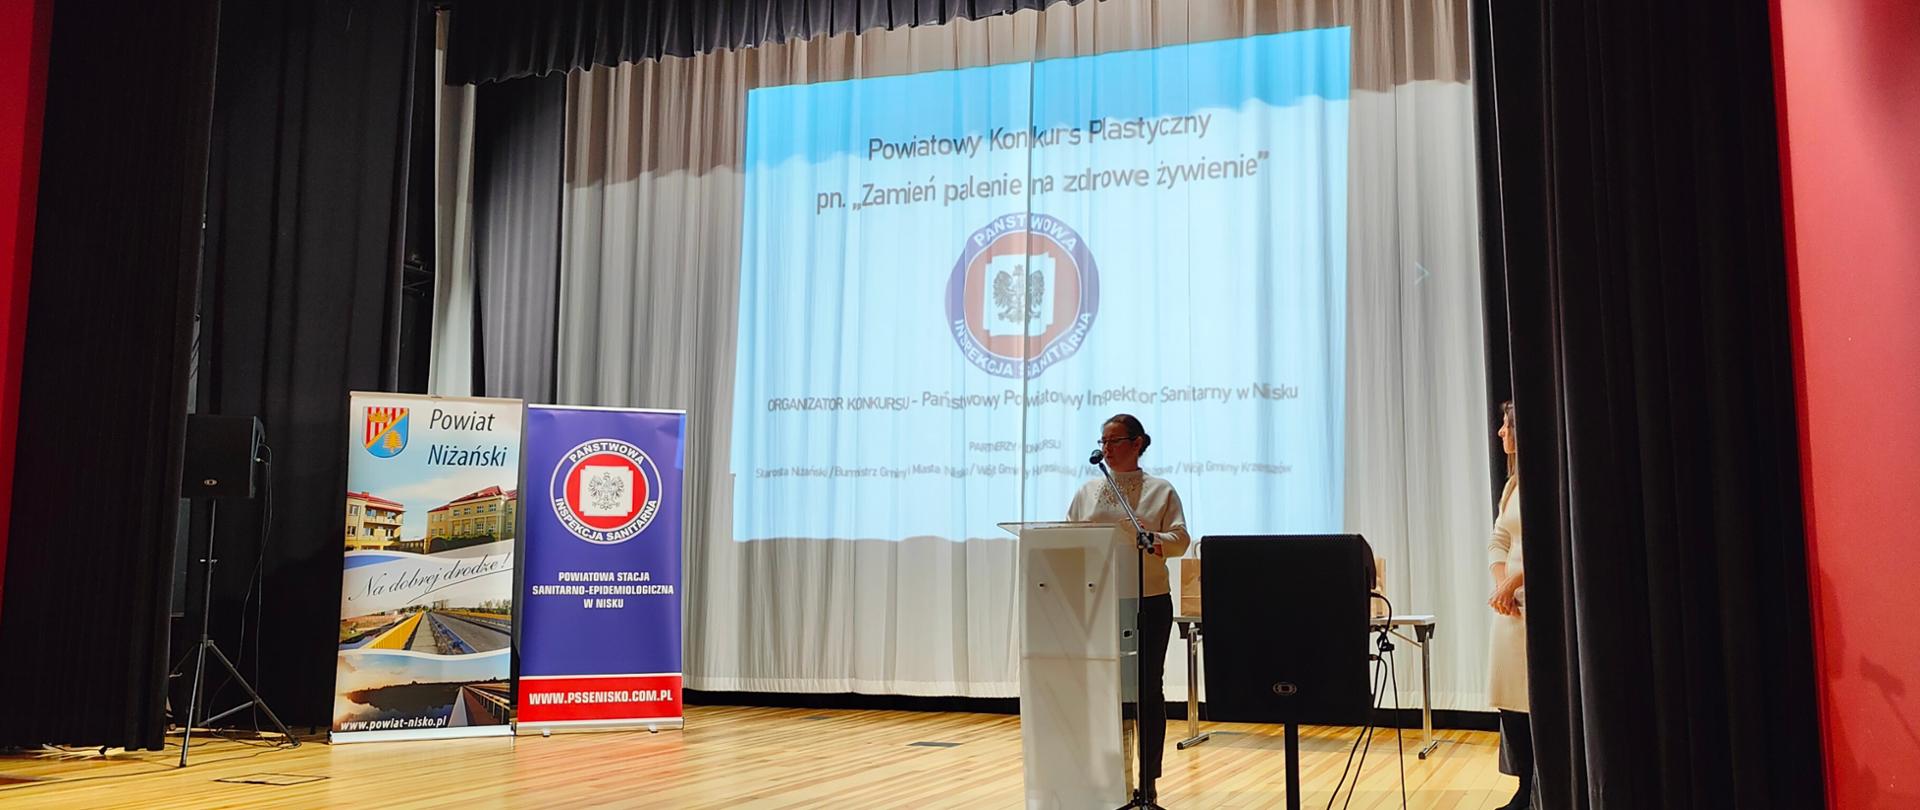 PPIS w Nisku - Pani Magdalena Rachwał wygłaszająca przemówienie, w tle wyświetlony slajd z napisem "Powiatowy Konkurs Plastyczny pn. "Zmień Palenie na Zdrowie Żywienie" i logo Inspekcji Sanitarnej